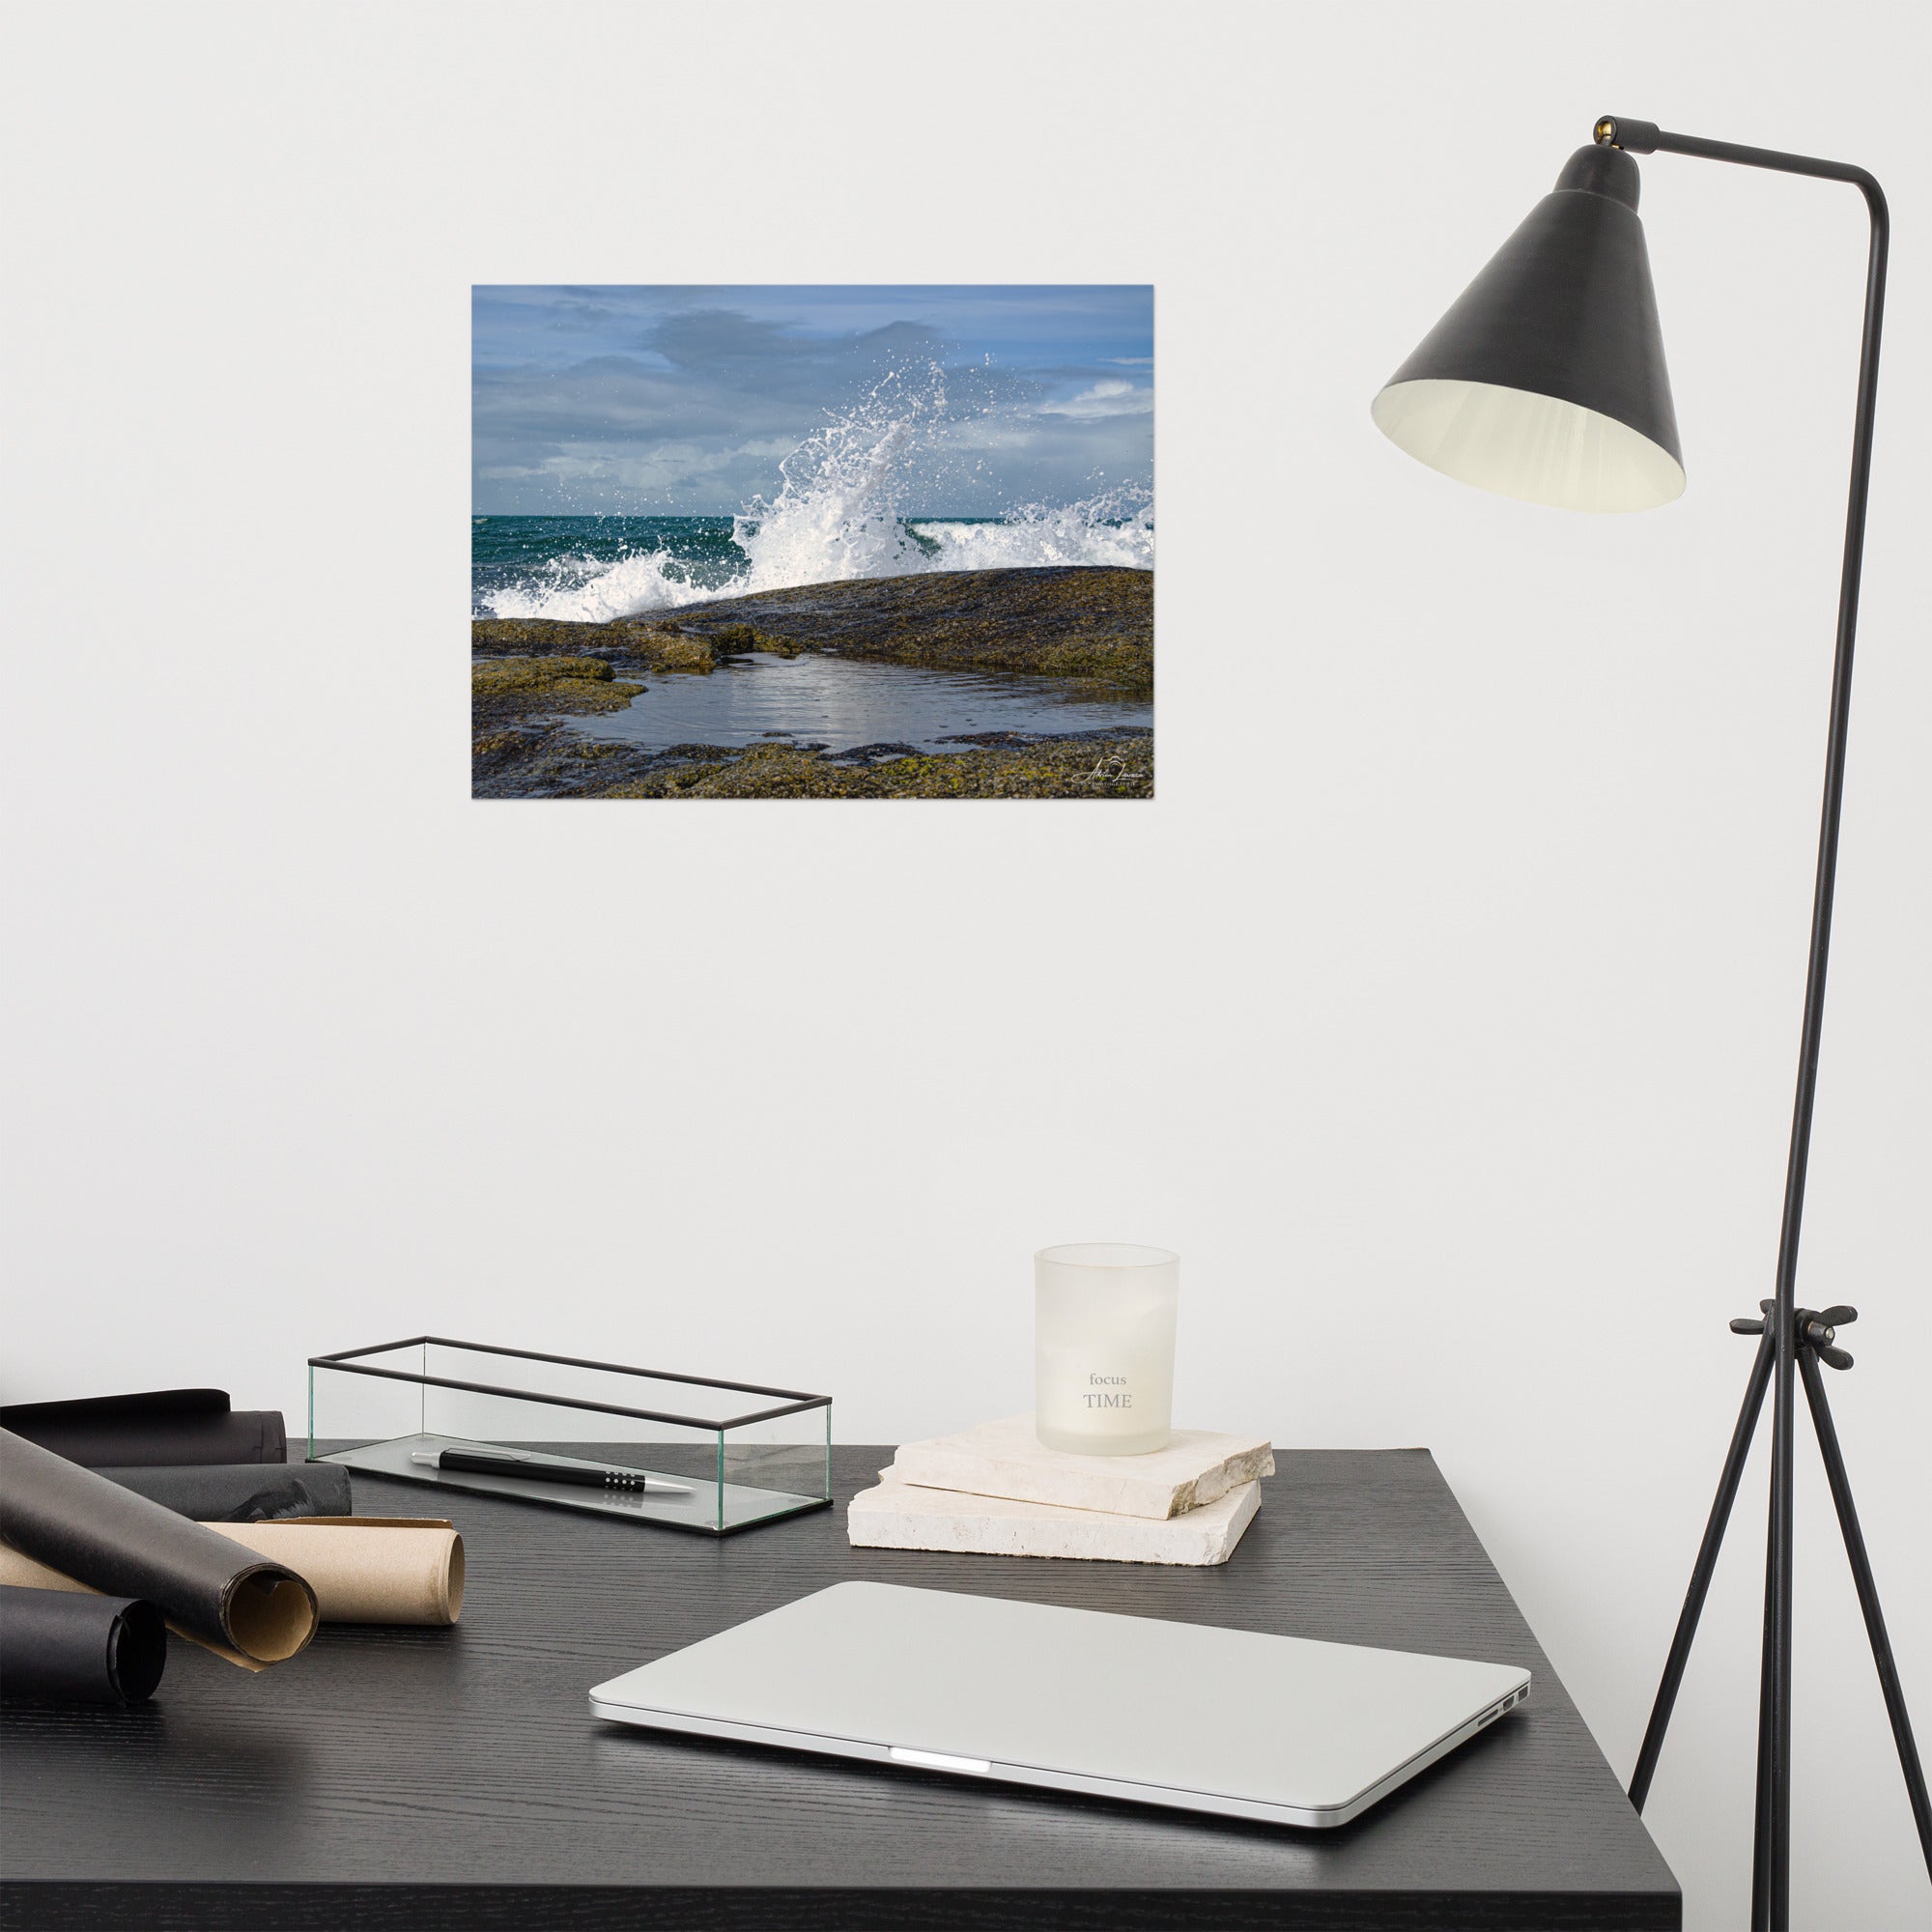 Photographie 'Pas de vague à Gatteville' d'Adrien Louraco, capturant l'impétuosité des vagues s'écrasant près du lieu où se dresse le phare de Gatteville, non visible sur l'image.